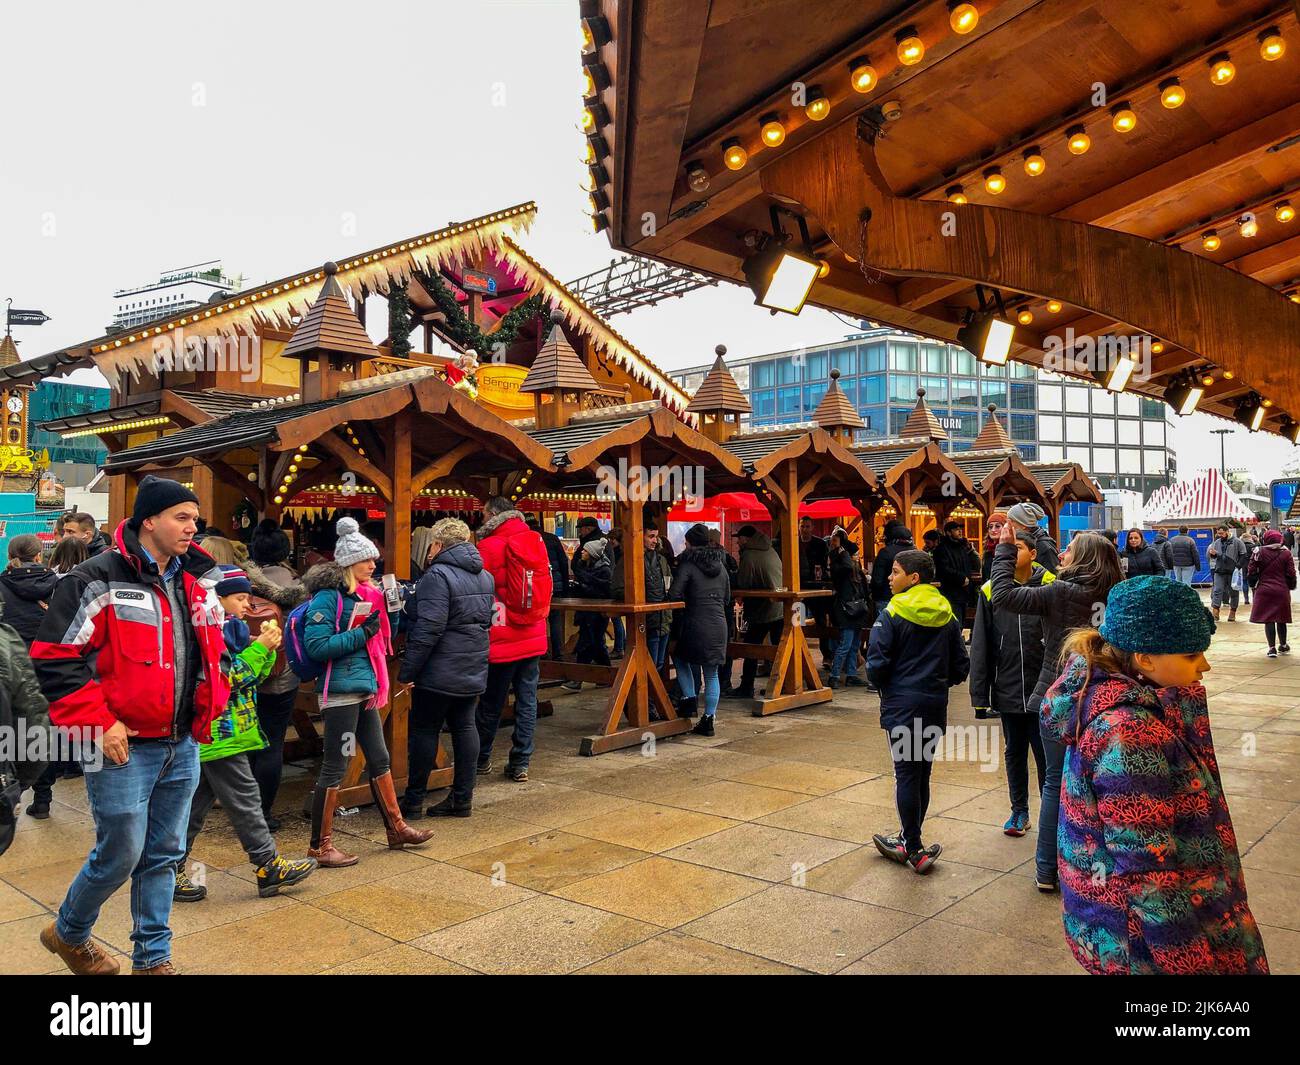 Berlín, Alemania, la gente de la muchedumbre vsiting mercado de alimentos de Navidad, bares en la calle Foto de stock